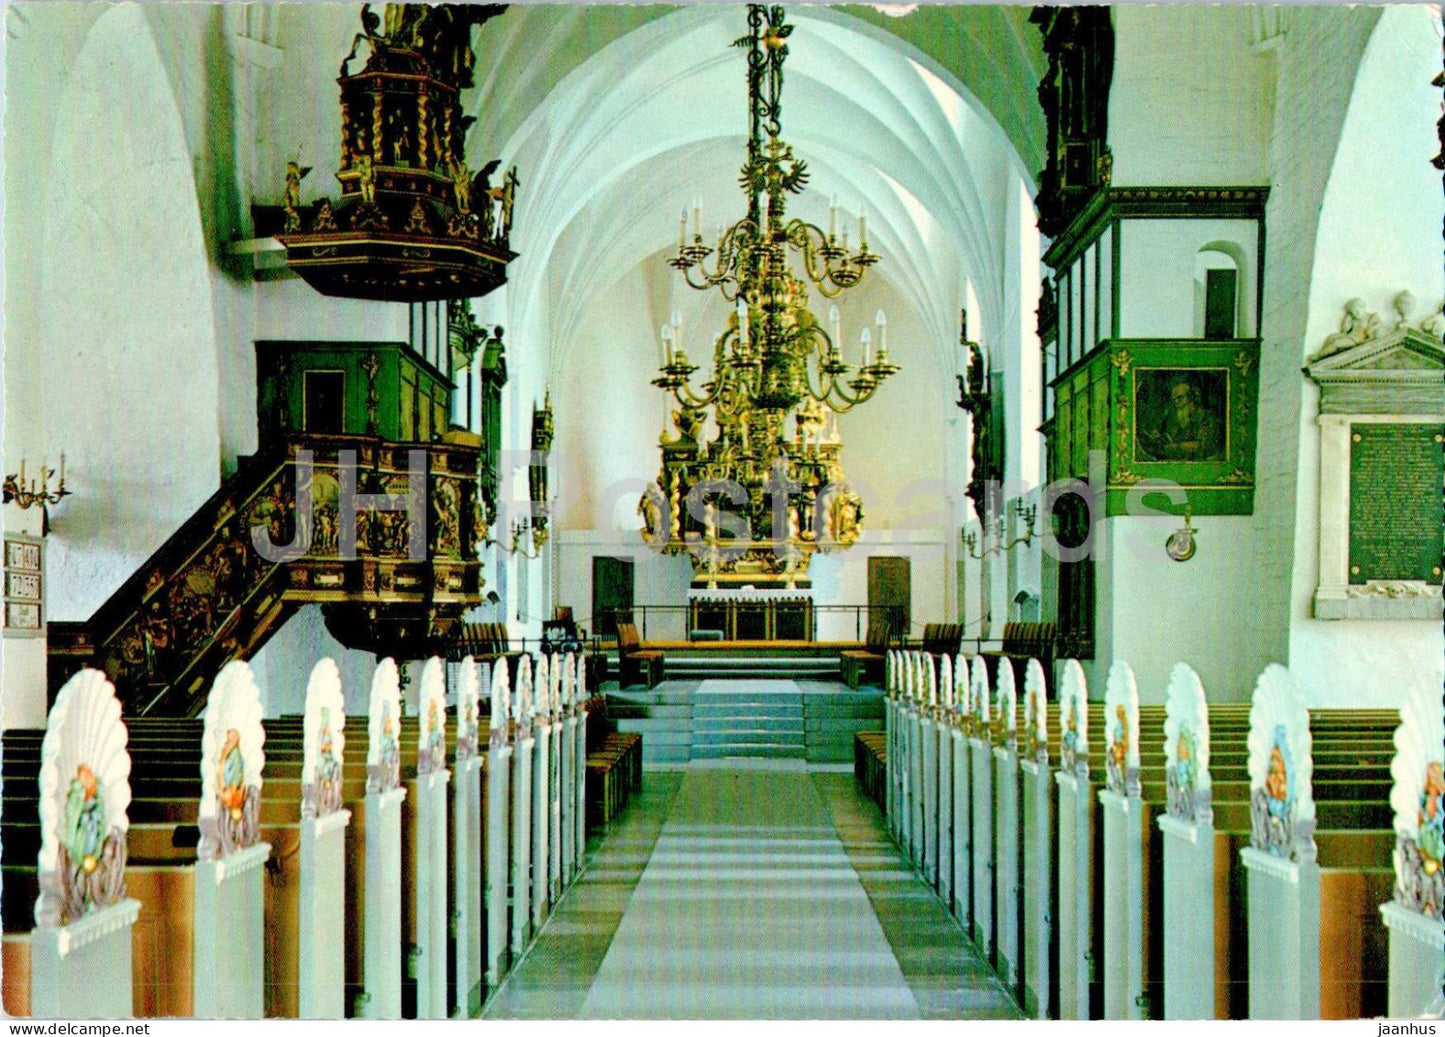 Aalborg - Interior - Budolfi Kirke - cathedral - 49 - 1967 - Denmark - used - JH Postcards